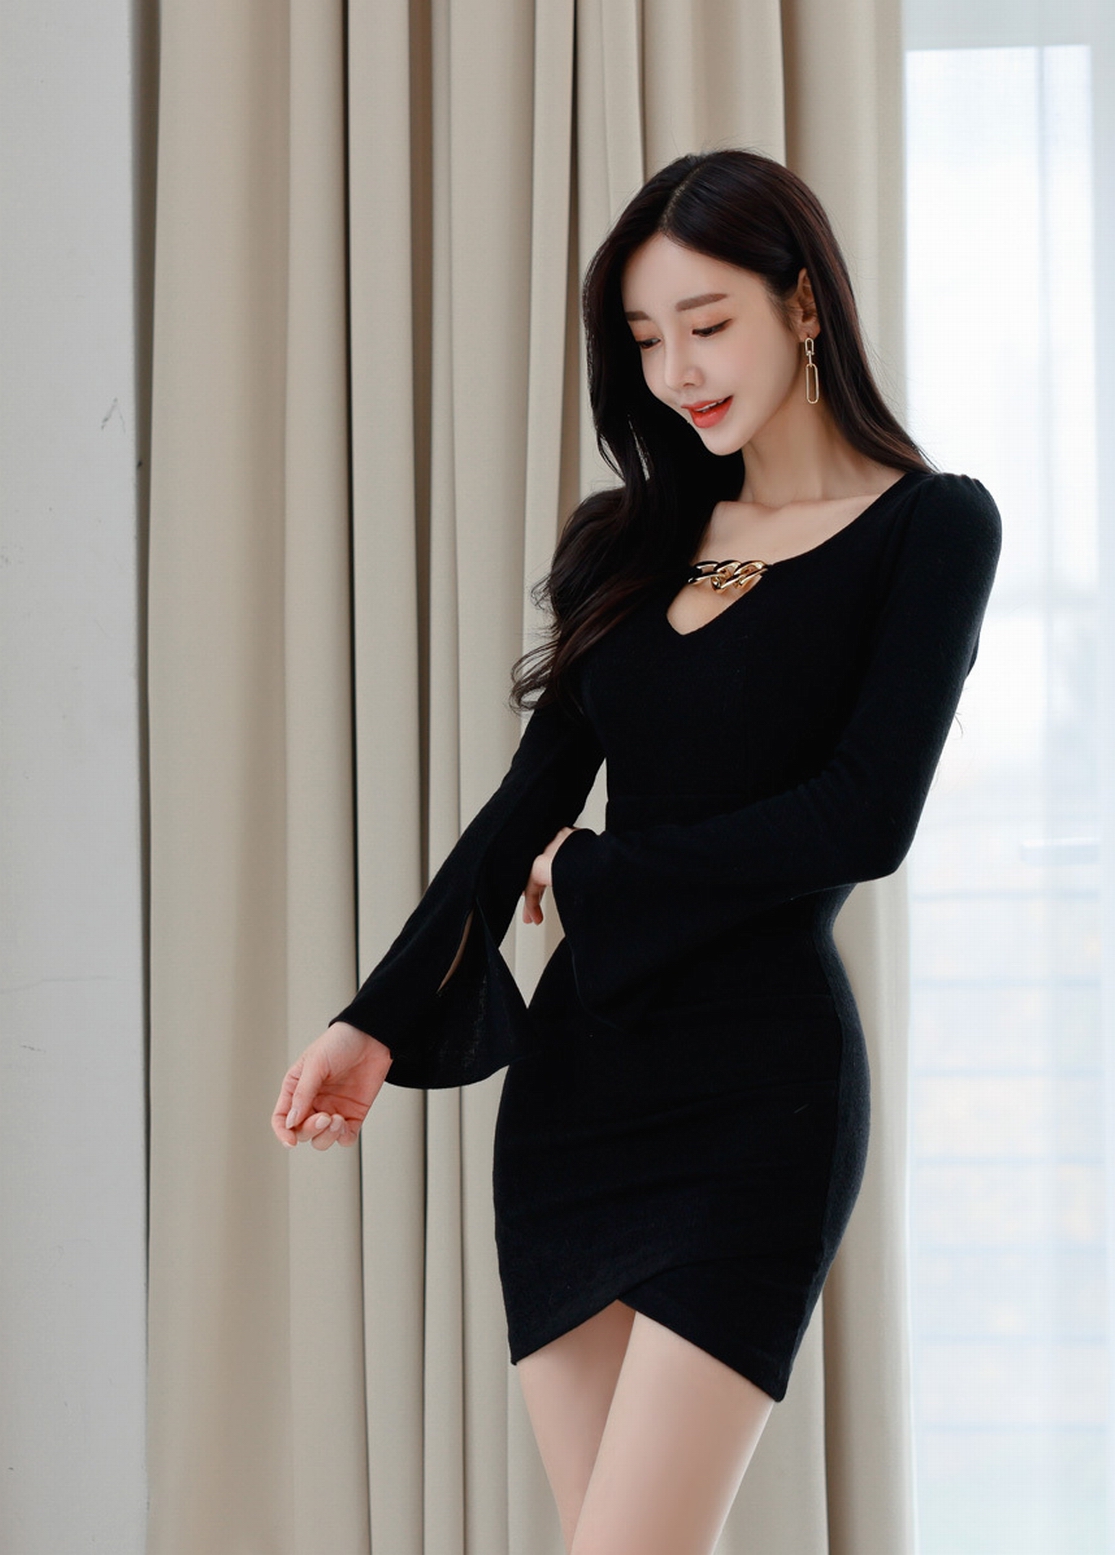 韩国美女孙允珠时尚写真:圣女金属链条低胸黑色连衣裙